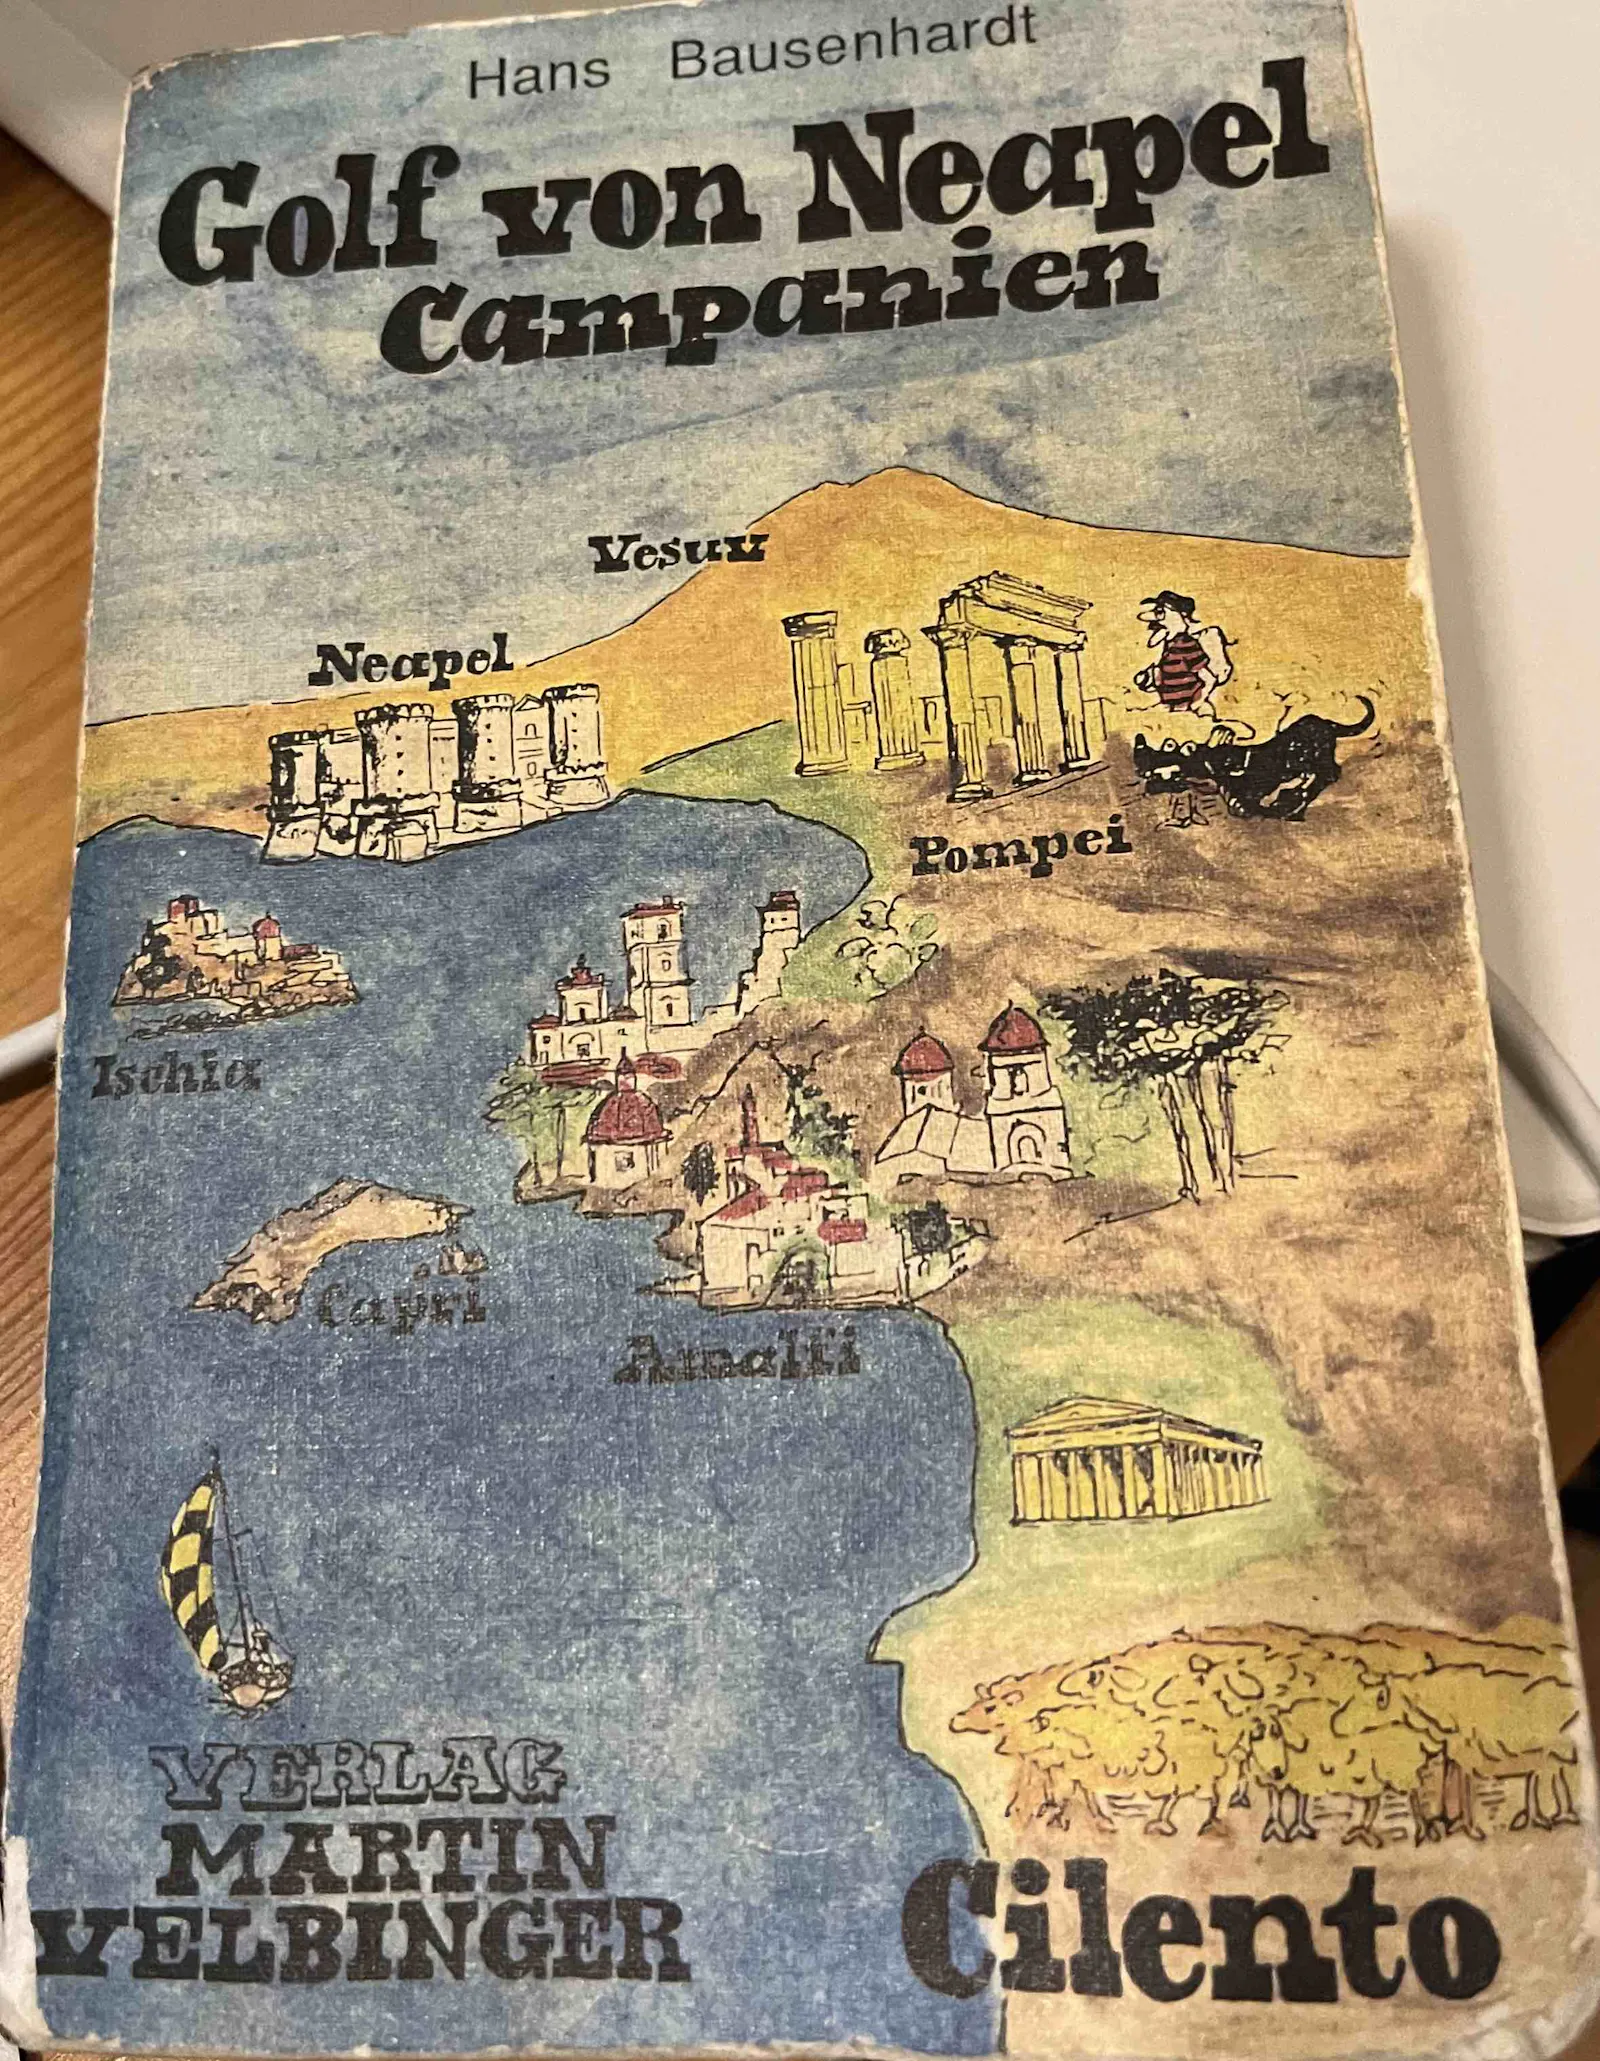 Das Cover des Buchs "Golf von Neapel - Campanien" mit einer bebilderten Karte des Golfs von Neapel und des Golfs von Salerno sowie des Cilento.